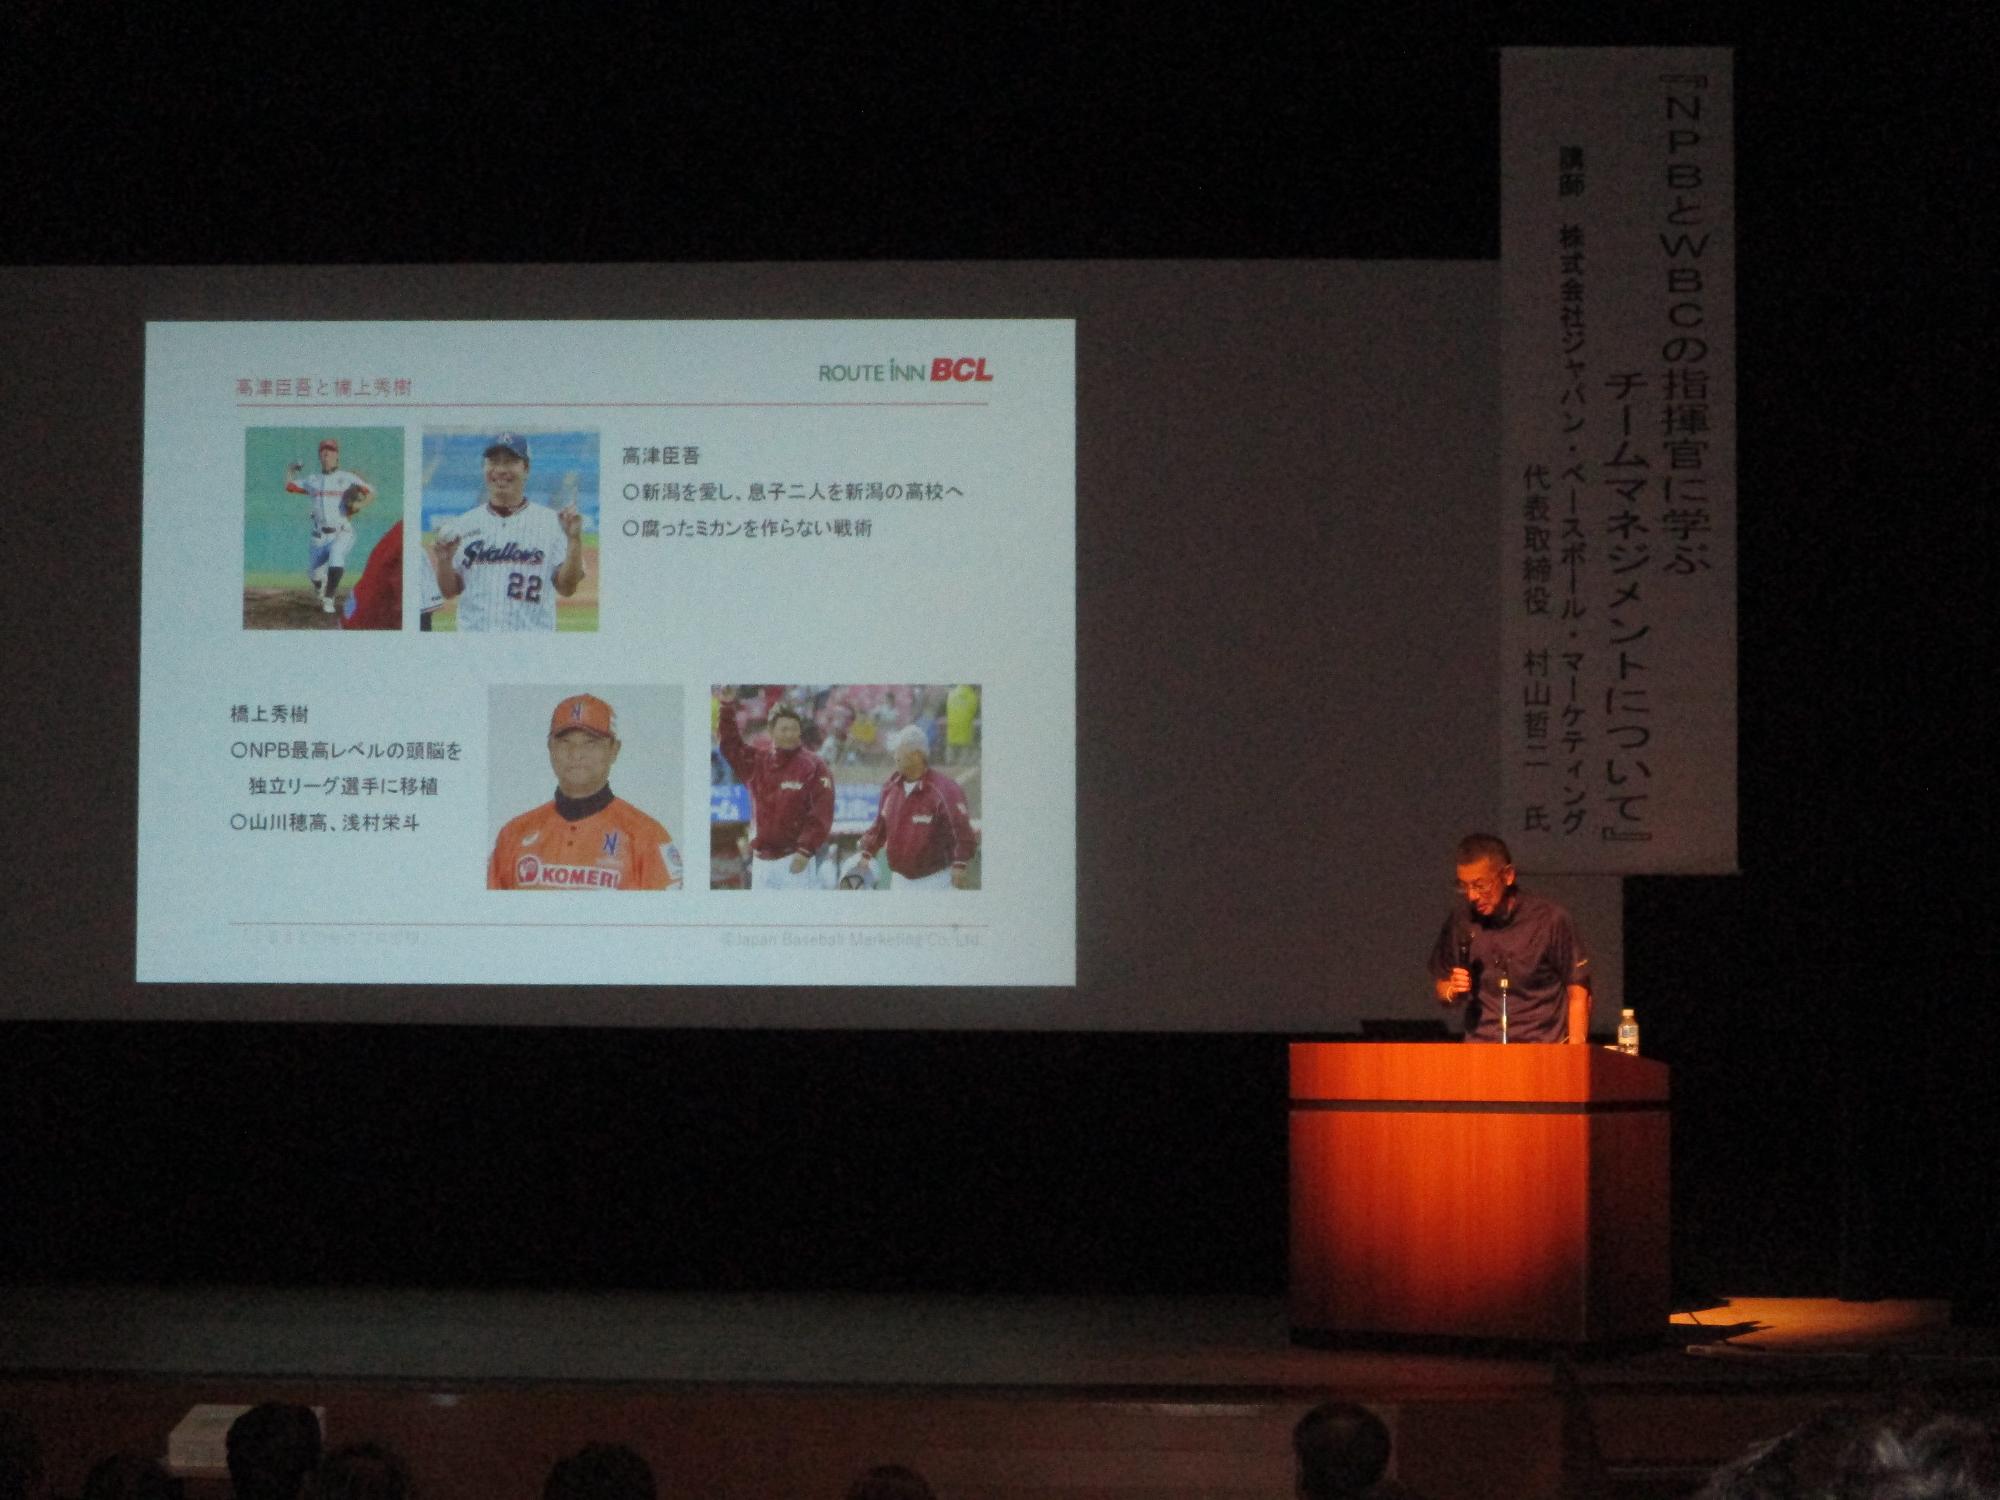 写真：野球選手の写真をスライドに映しながら、村山哲二さんがスポーツの内容を中心に講演をしている様子です